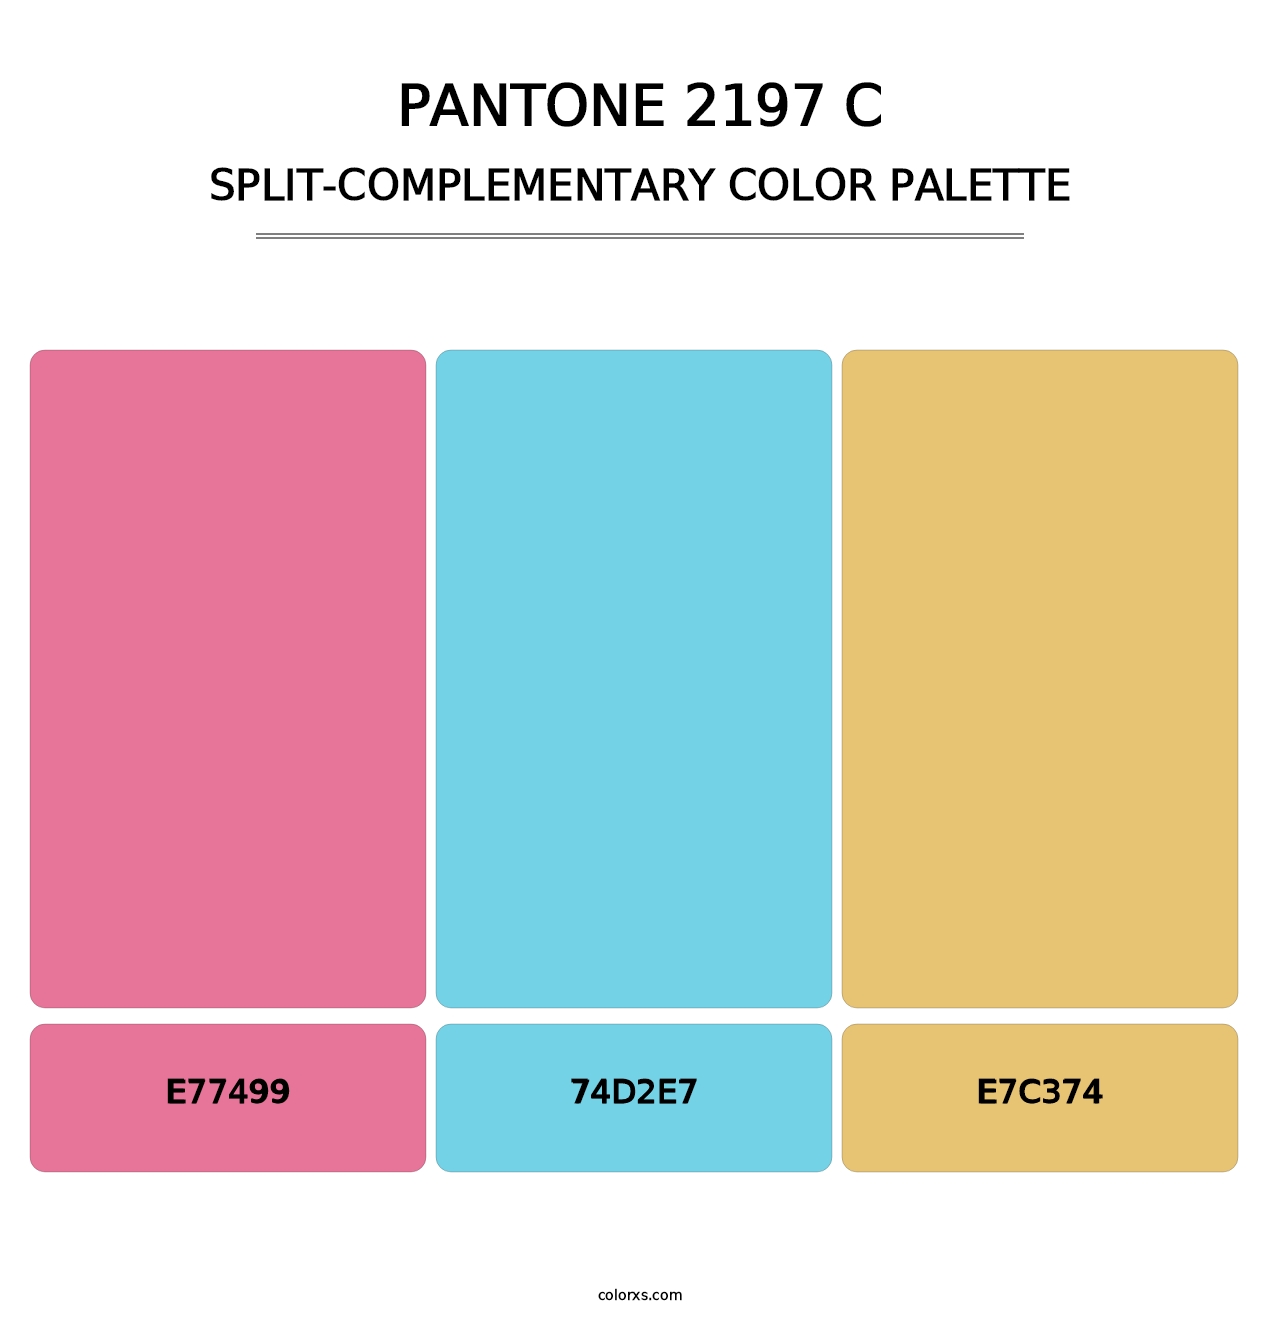 PANTONE 2197 C - Split-Complementary Color Palette